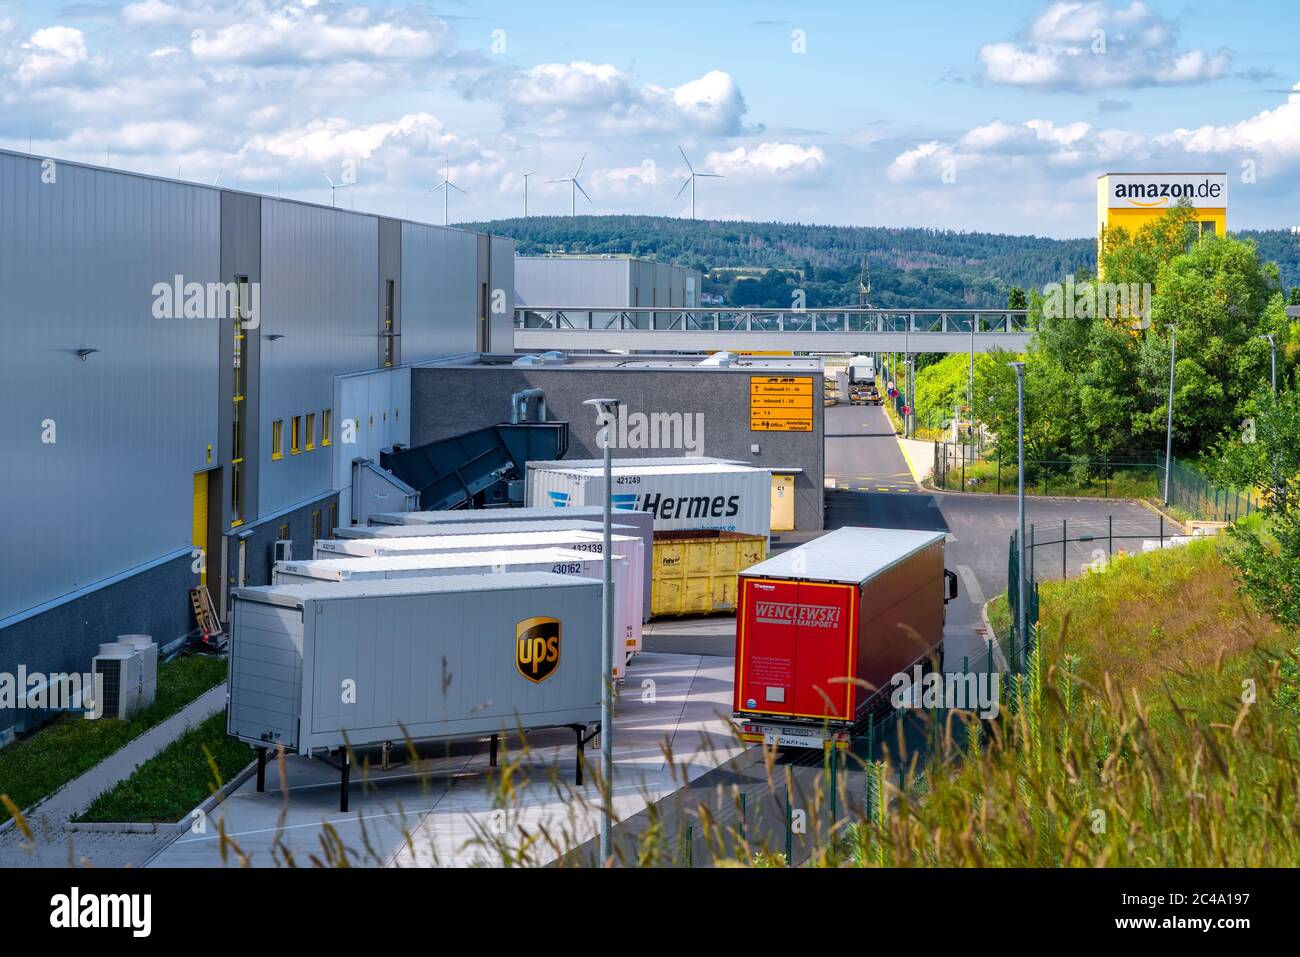 Bad Hersfeld, Allemagne, 22.06.2020 : le bâtiment de l'entrepôt et du centre de distribution Amazon gère les achats en ligne, le commerce de détail Internet et le développement technologique Banque D'Images